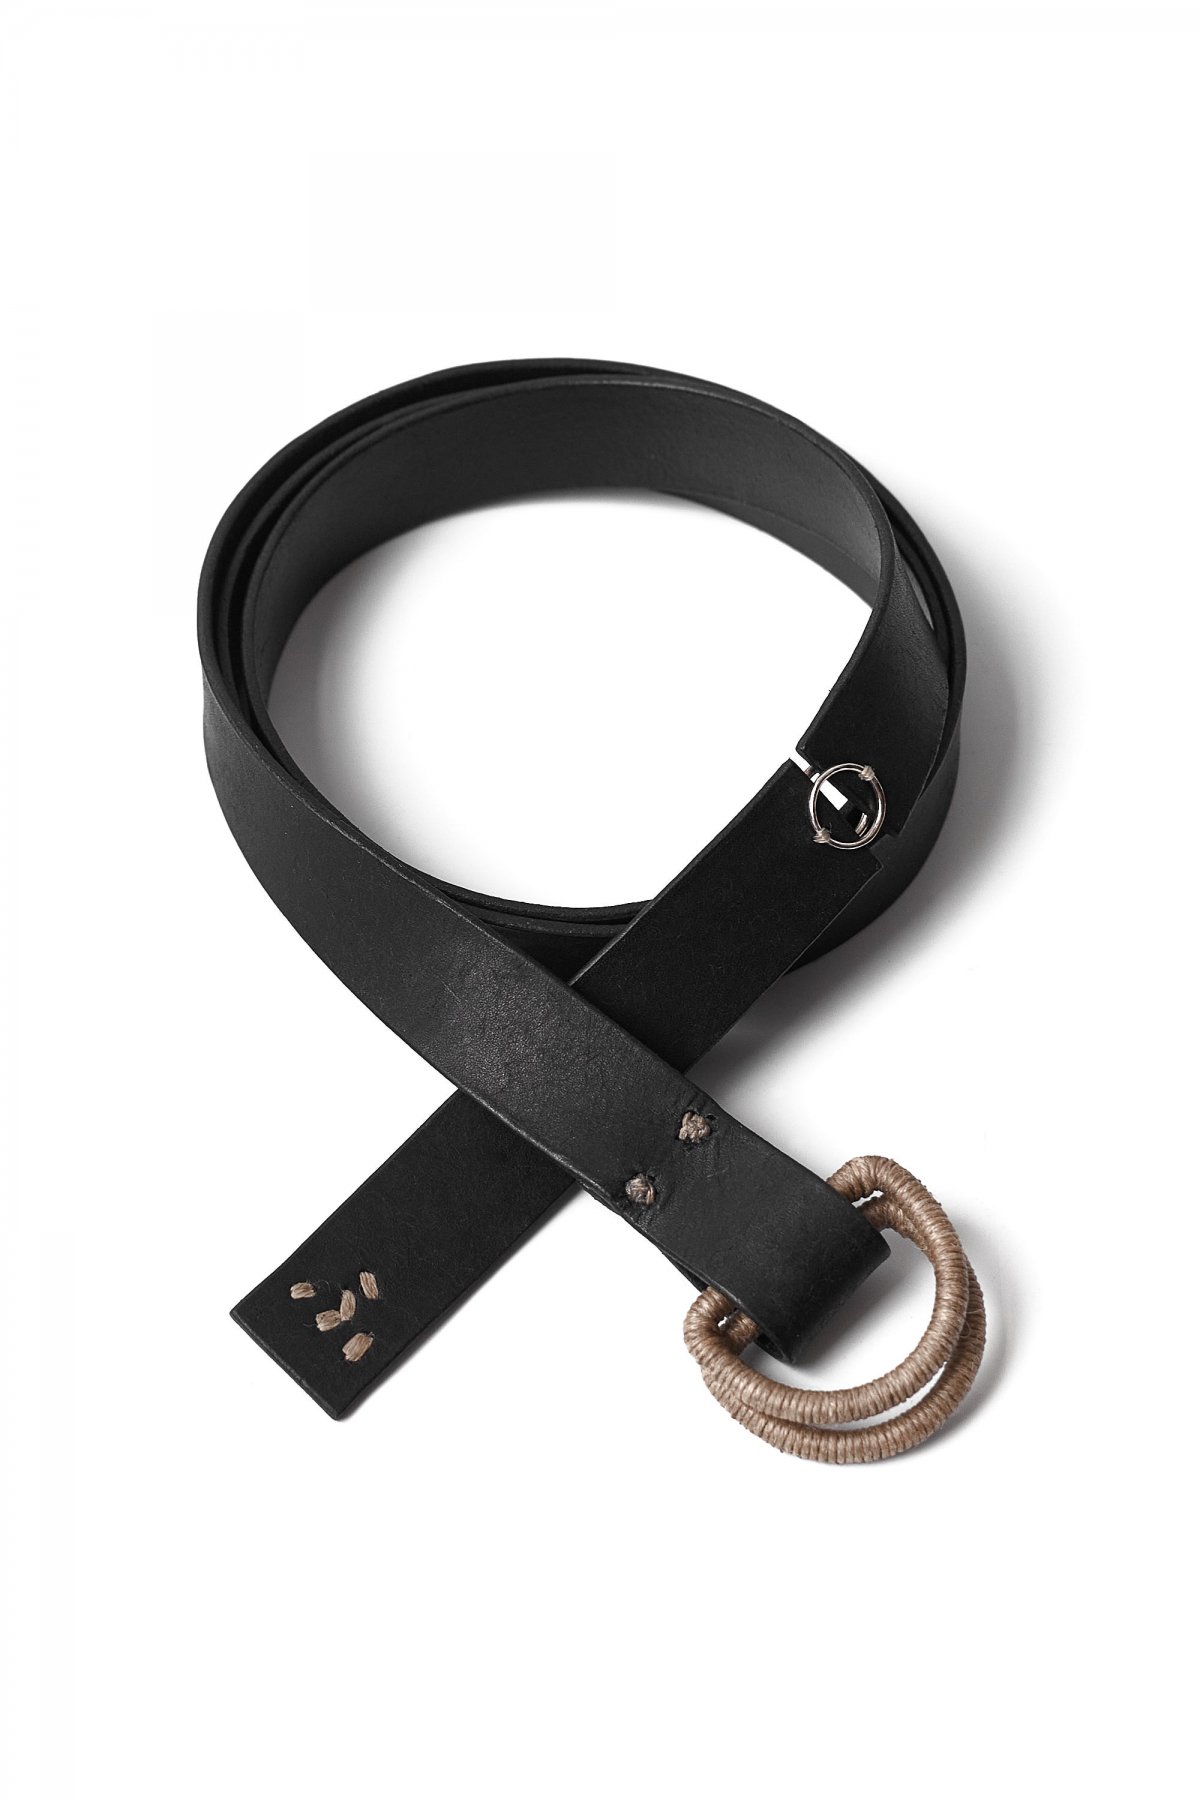 sosite leather ring belt